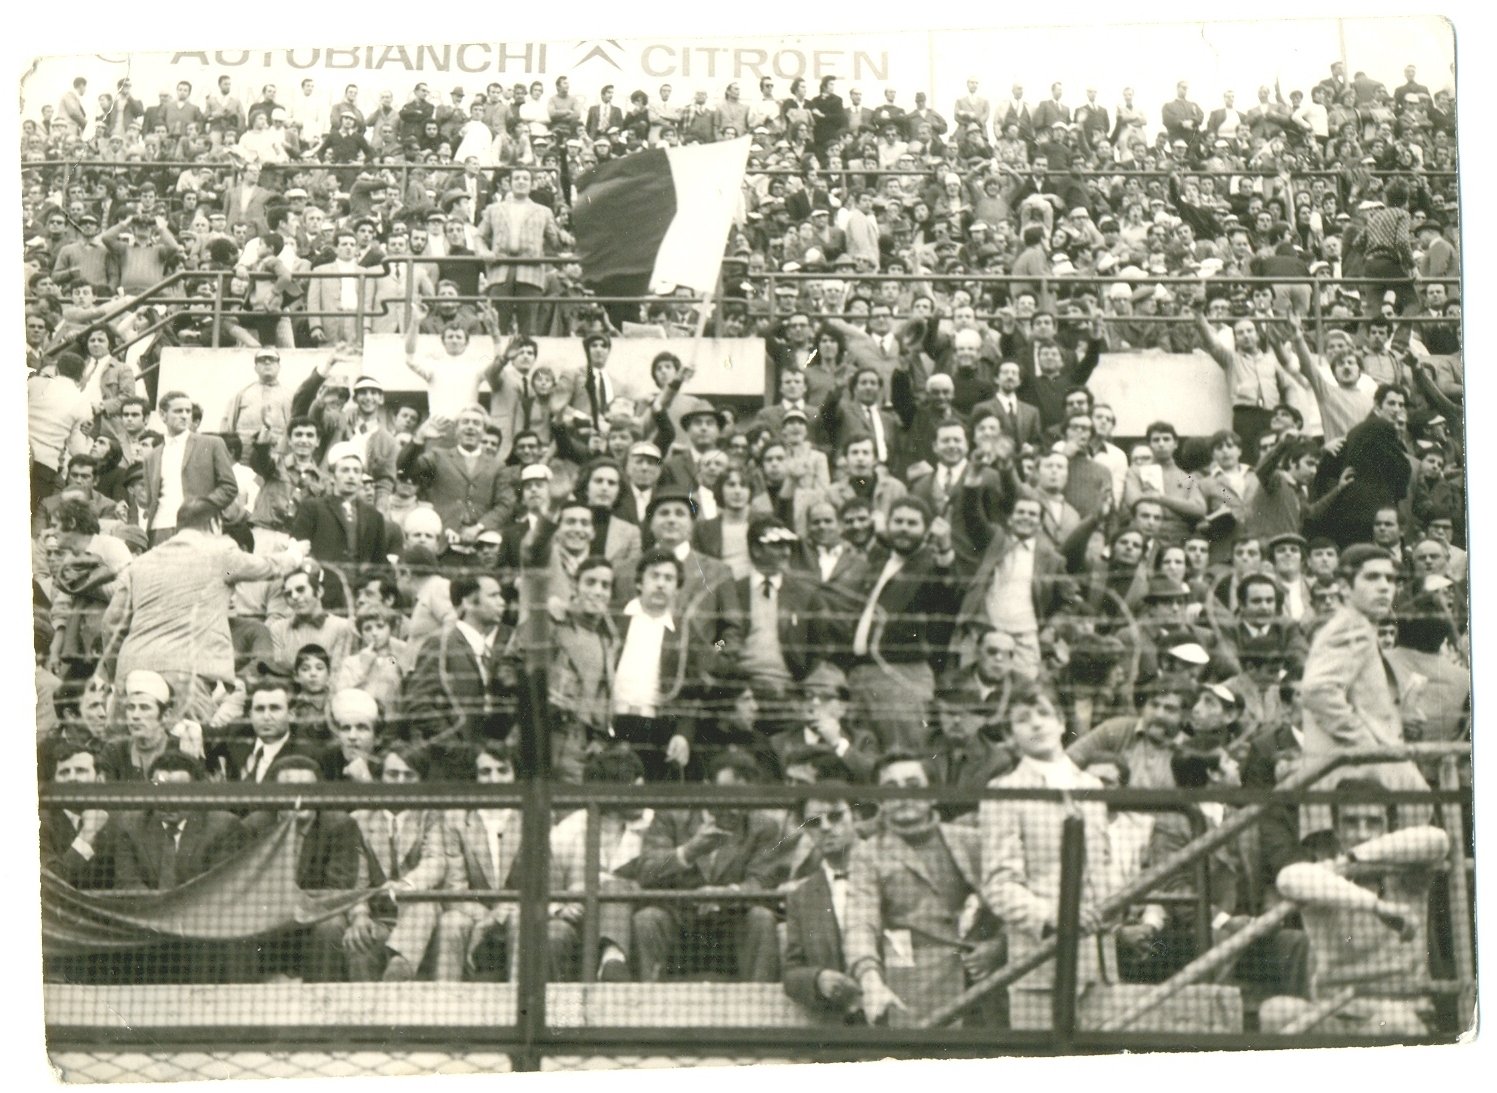 Serie C Al Della Vittoria nel 1966